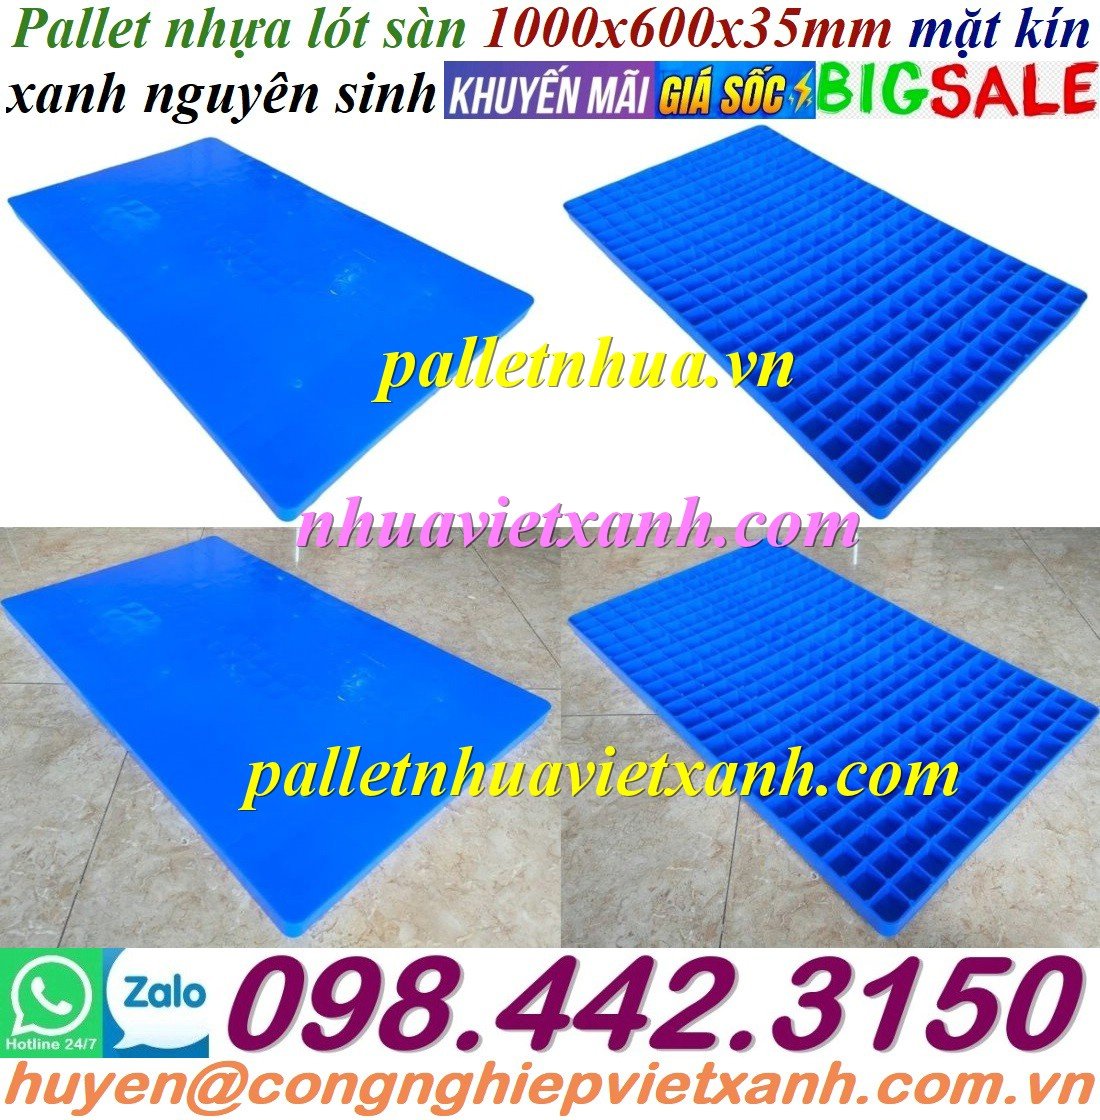 Pallet nhựa lót sàn 1000x600x35mm mặt kín xanh nguyên sinh